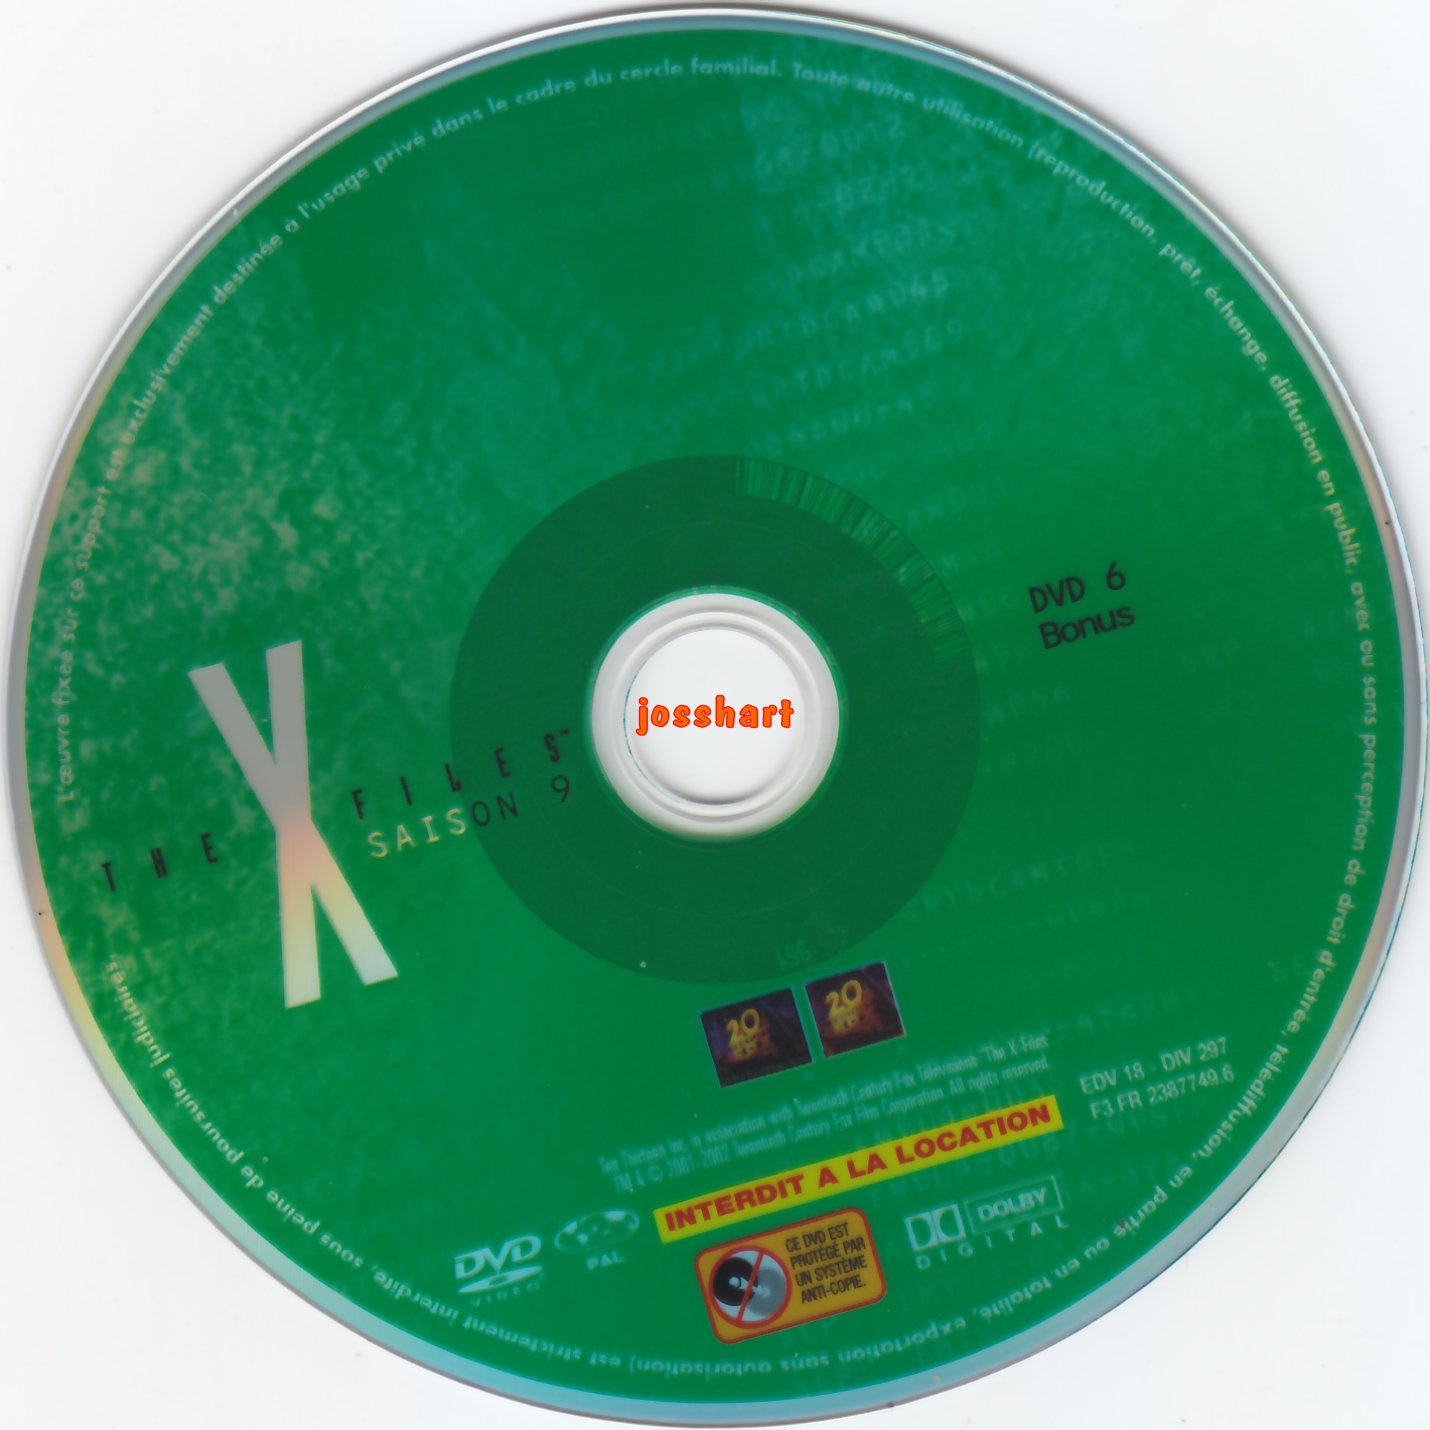 The X Files Saison 9 DVD 6 v2